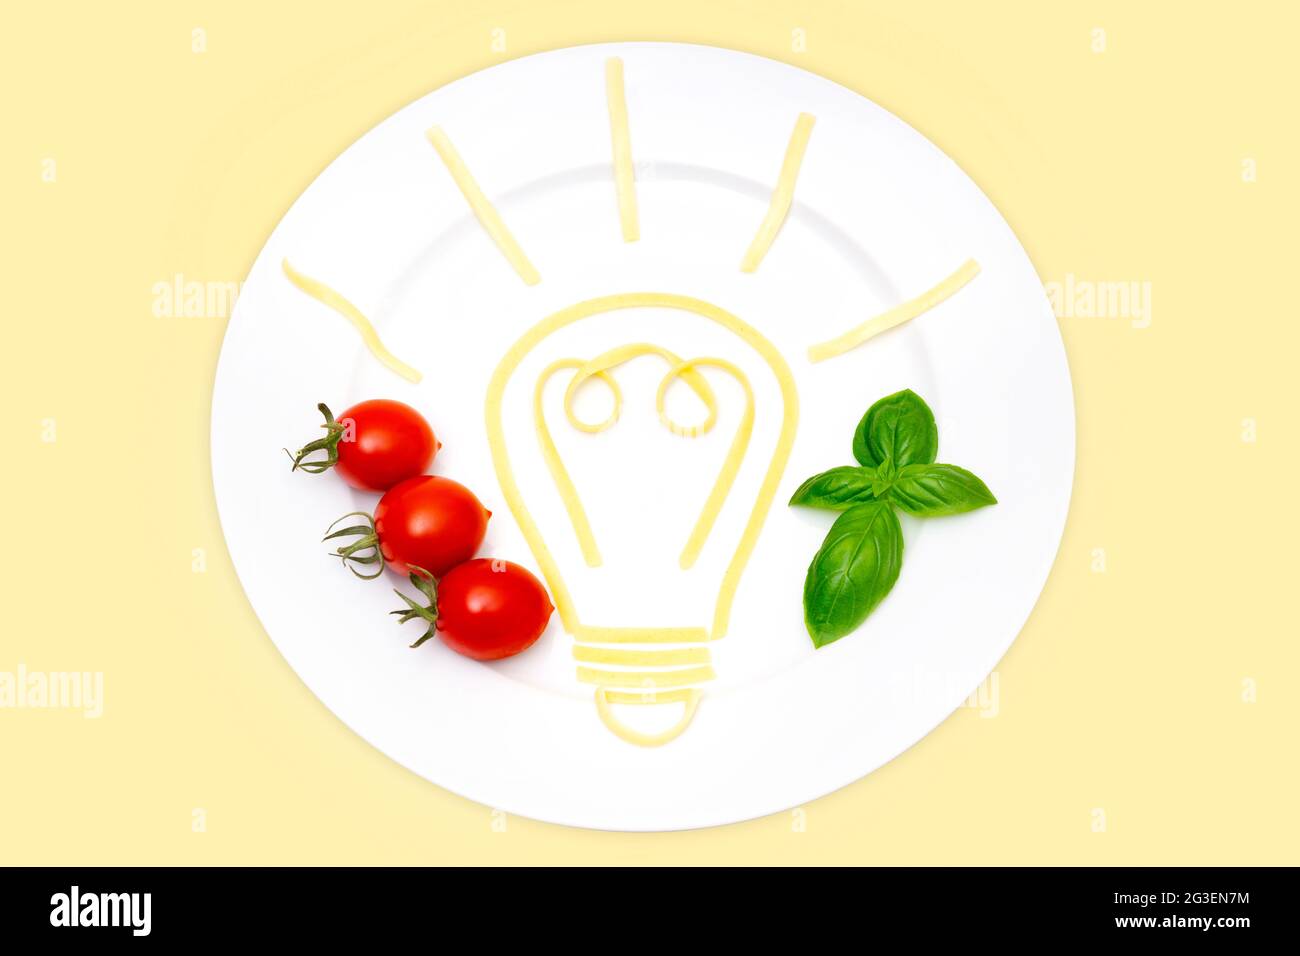 Composizione creativa del cibo: Vista dall'alto di un piatto bianco con un simbolo luminoso della lampadina fatta di pasta bollita, pomodori ciliegini e foglie di basilico isolati Foto Stock